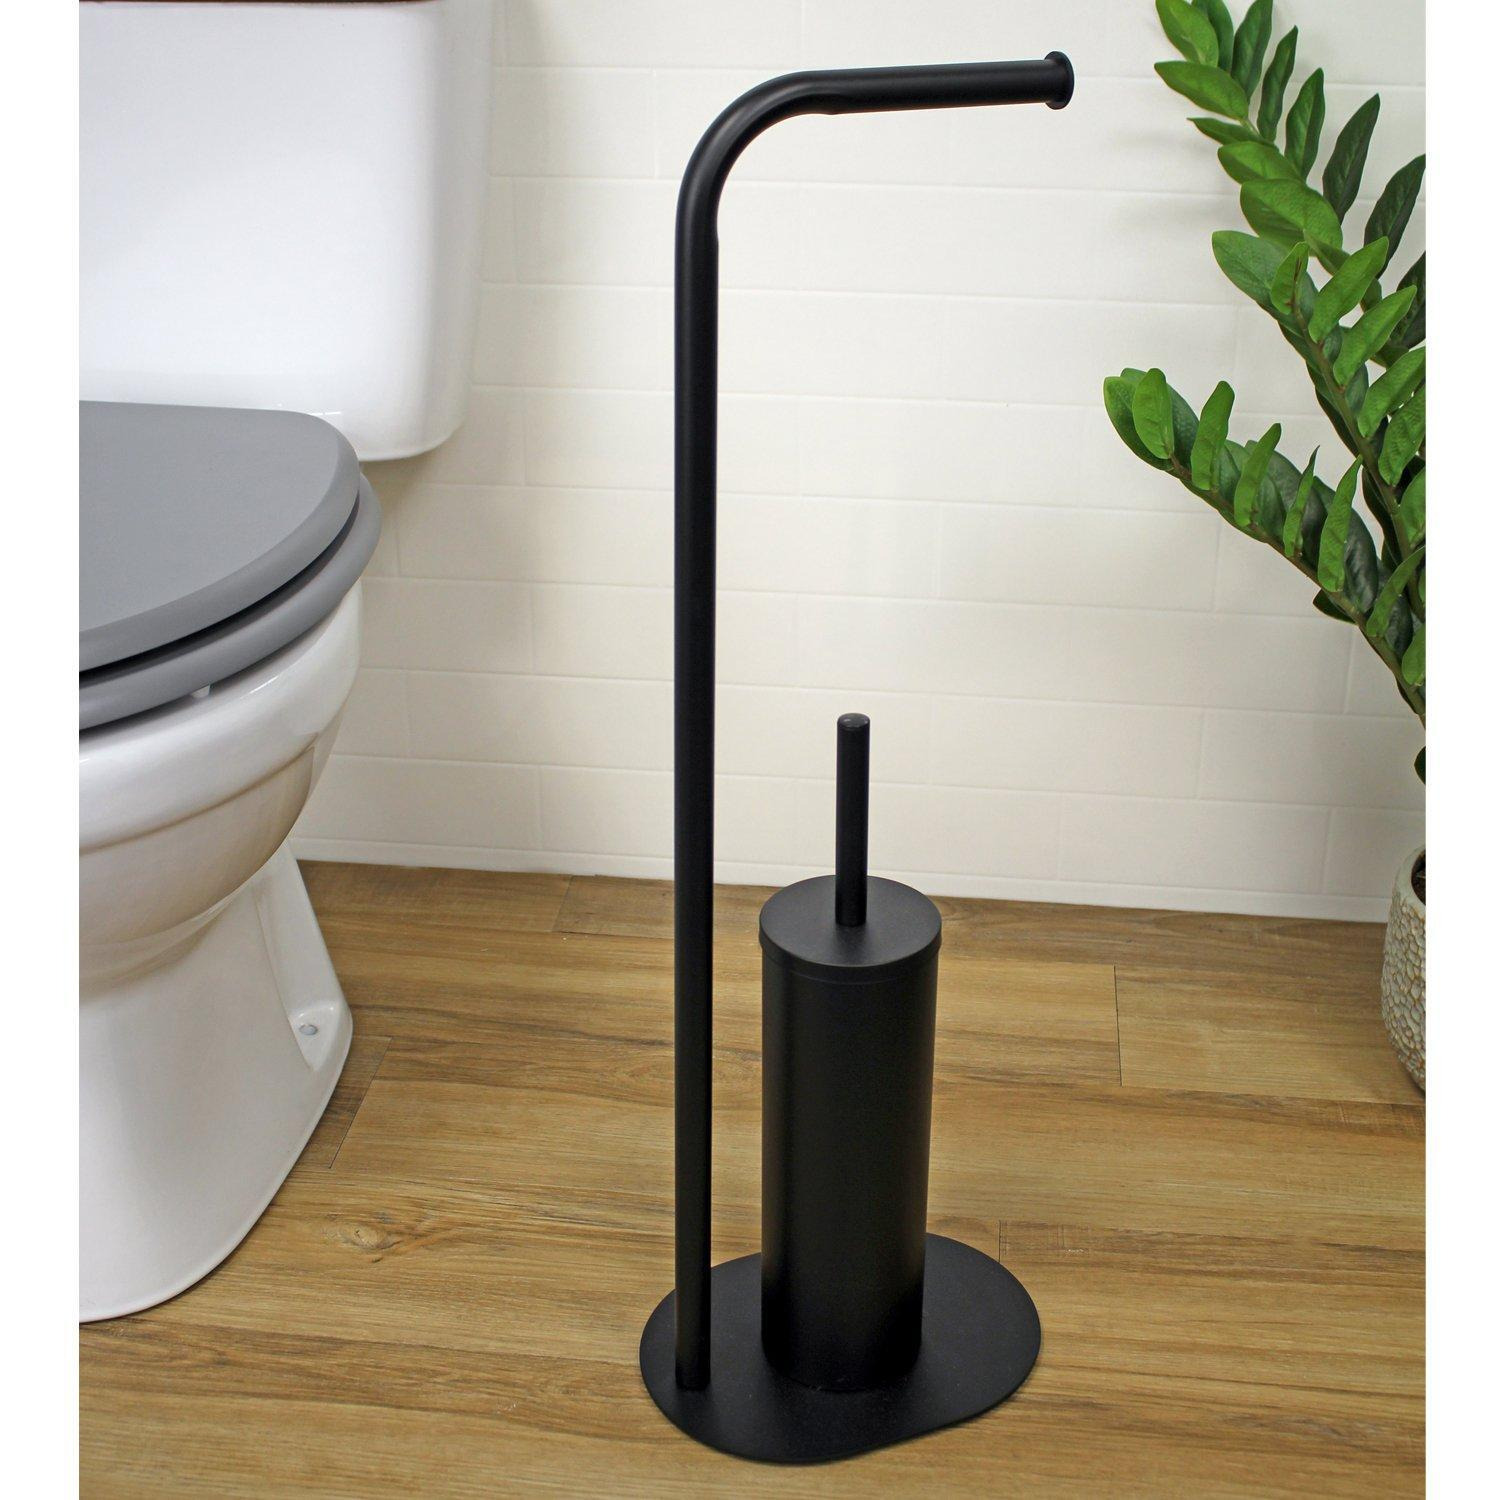 'Aspen' Black Toilet Roll Holder & Brush Combination Freestanding - image 1